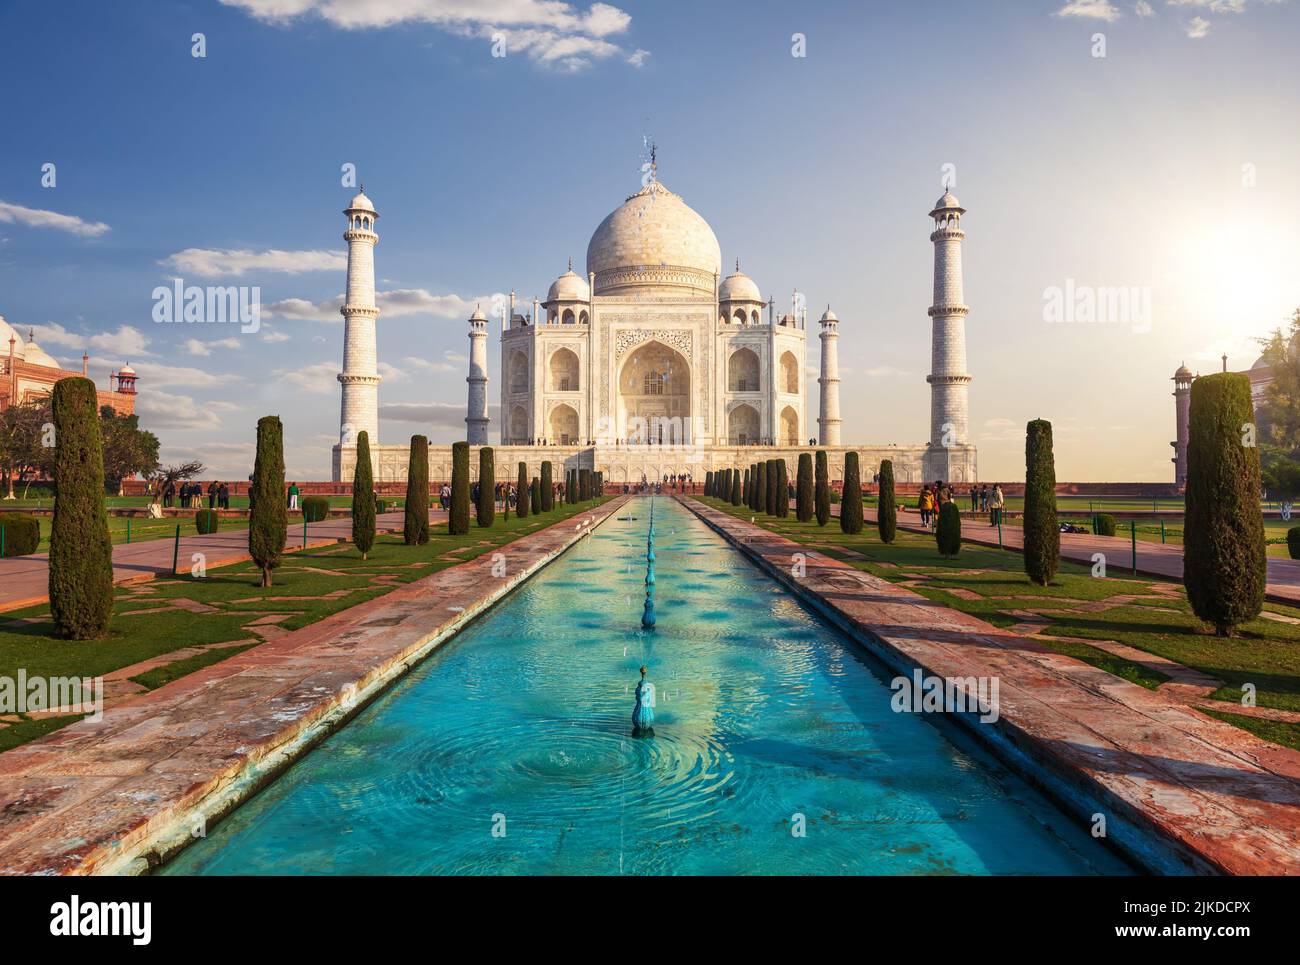 Taj Mahal in India, Agra, gorgeous landmark front view. Stock Photo